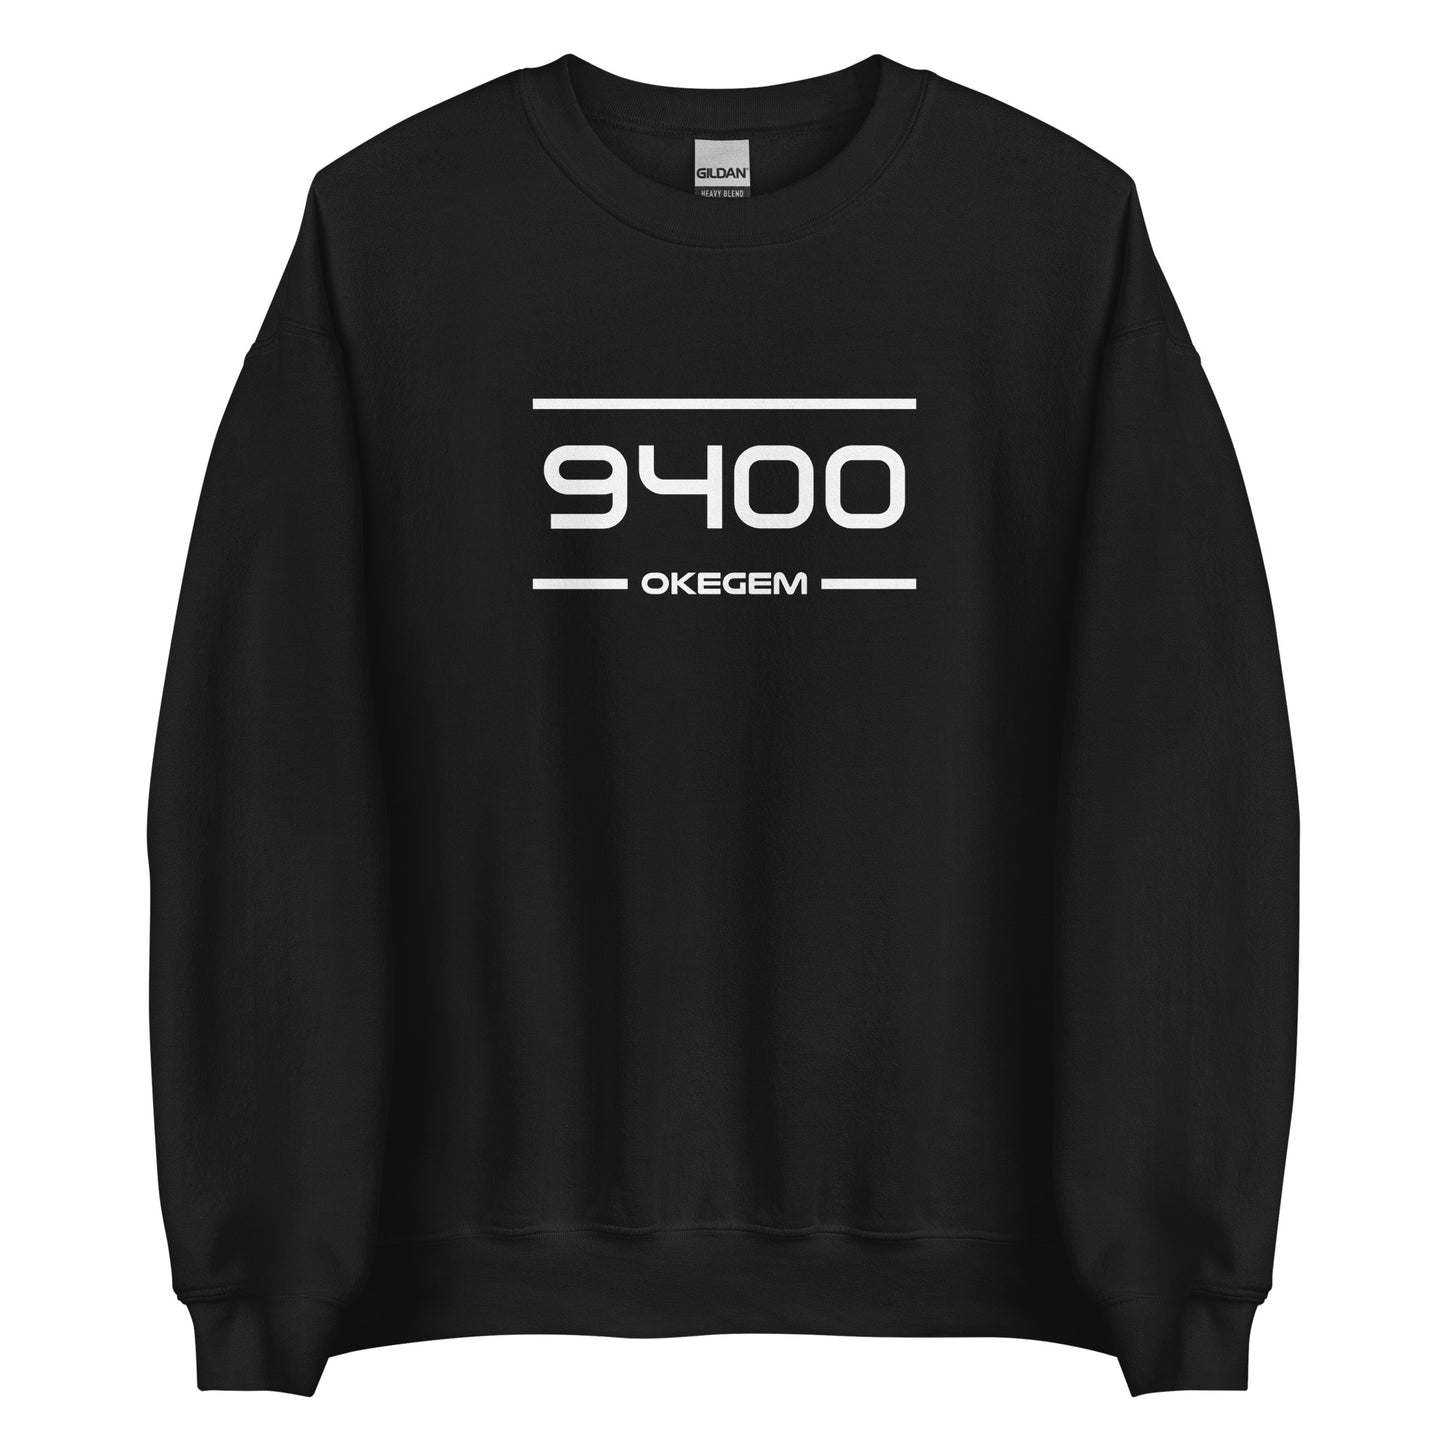 Sweater - 9400 - Okegem (M/V)